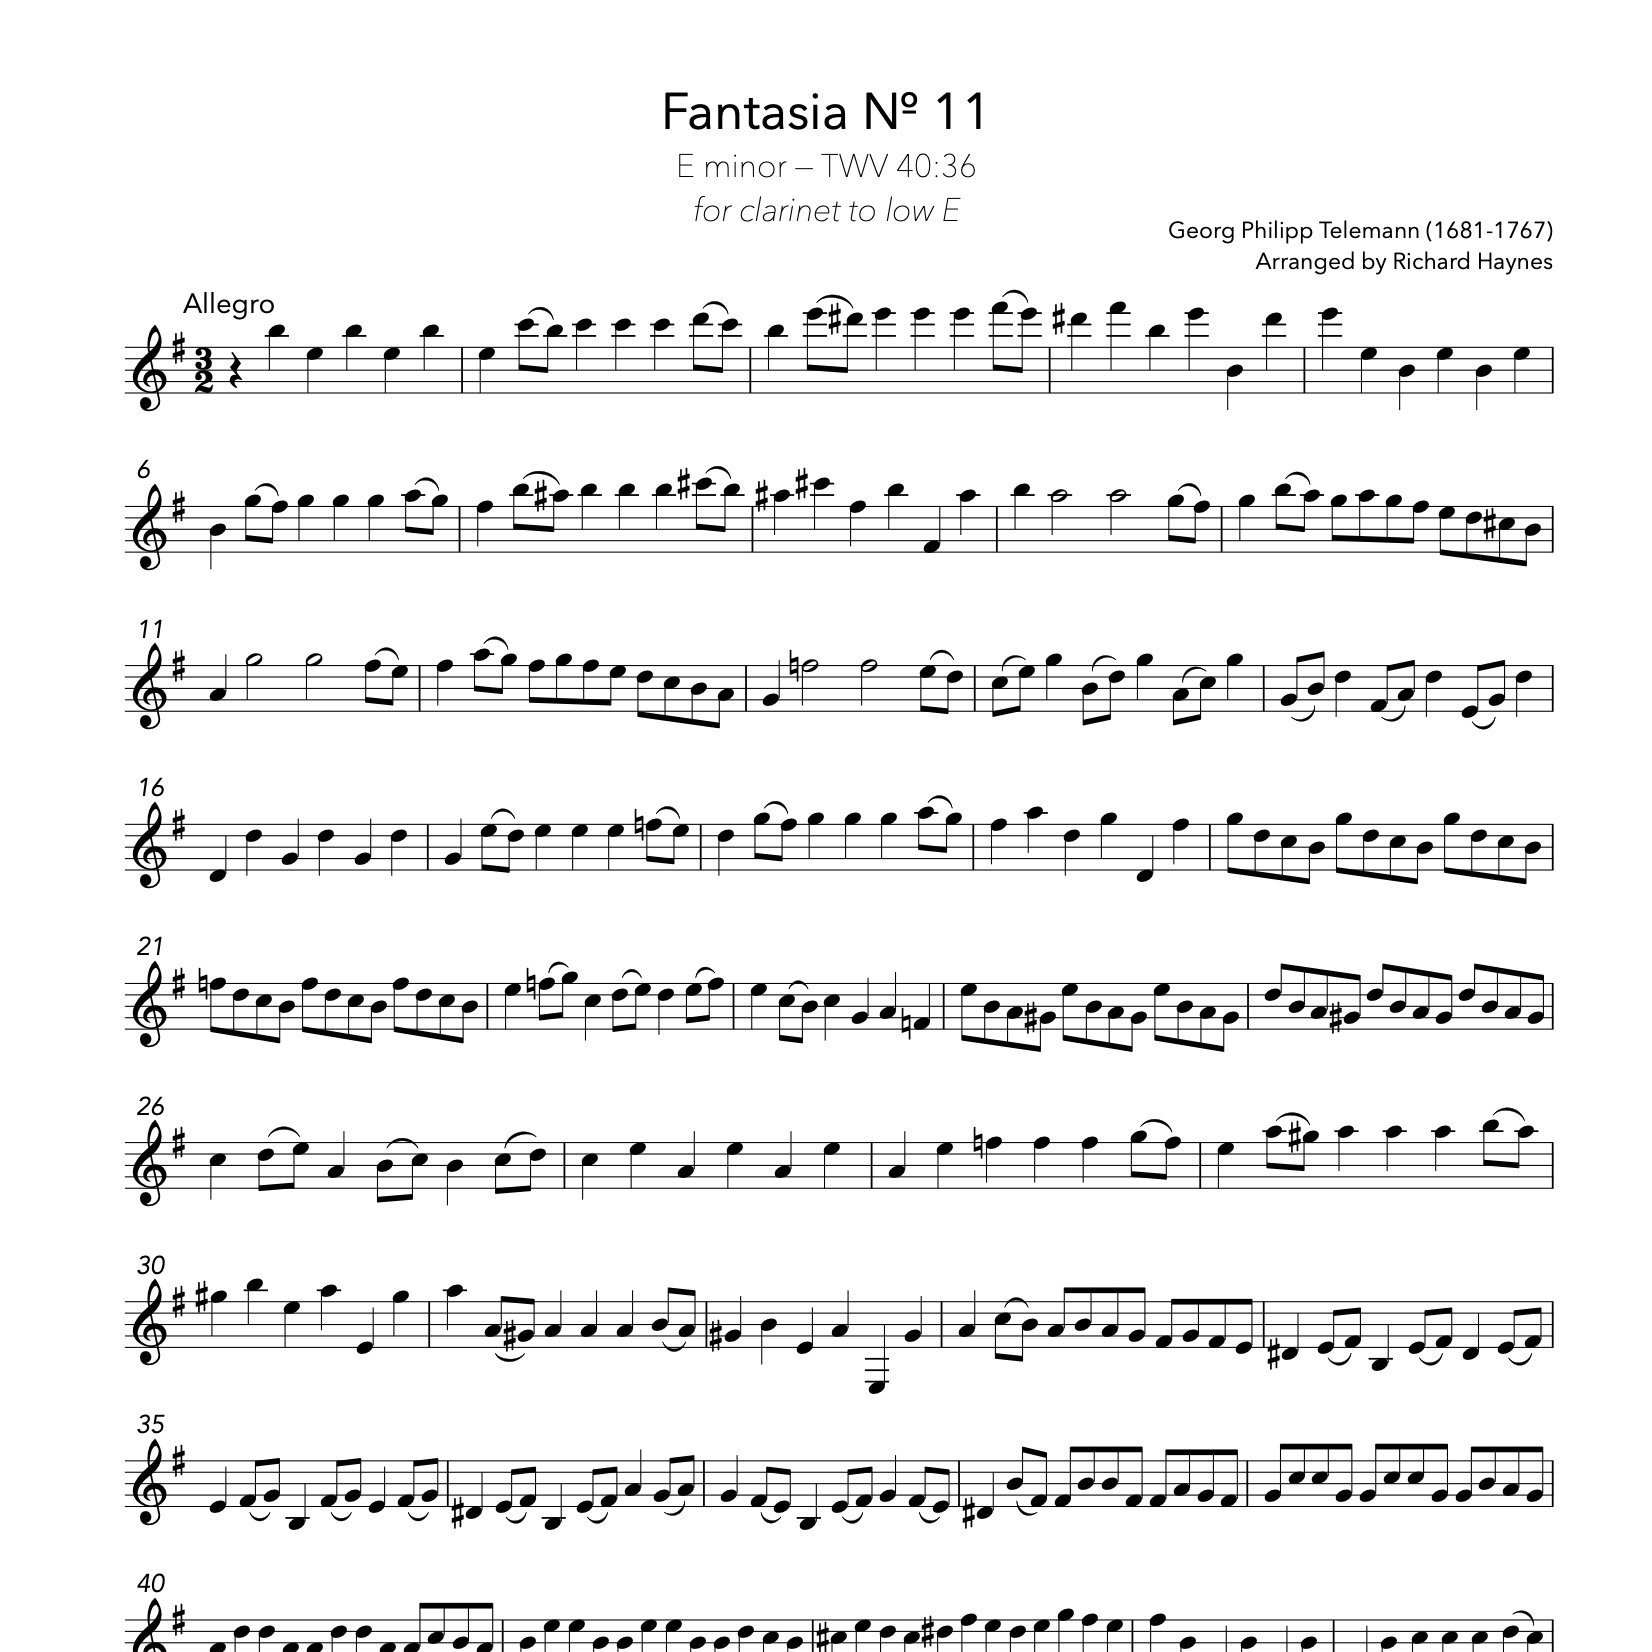 Bass+Viol+Fantasia+No+11+Telemann%3AHaynes+4.jpg